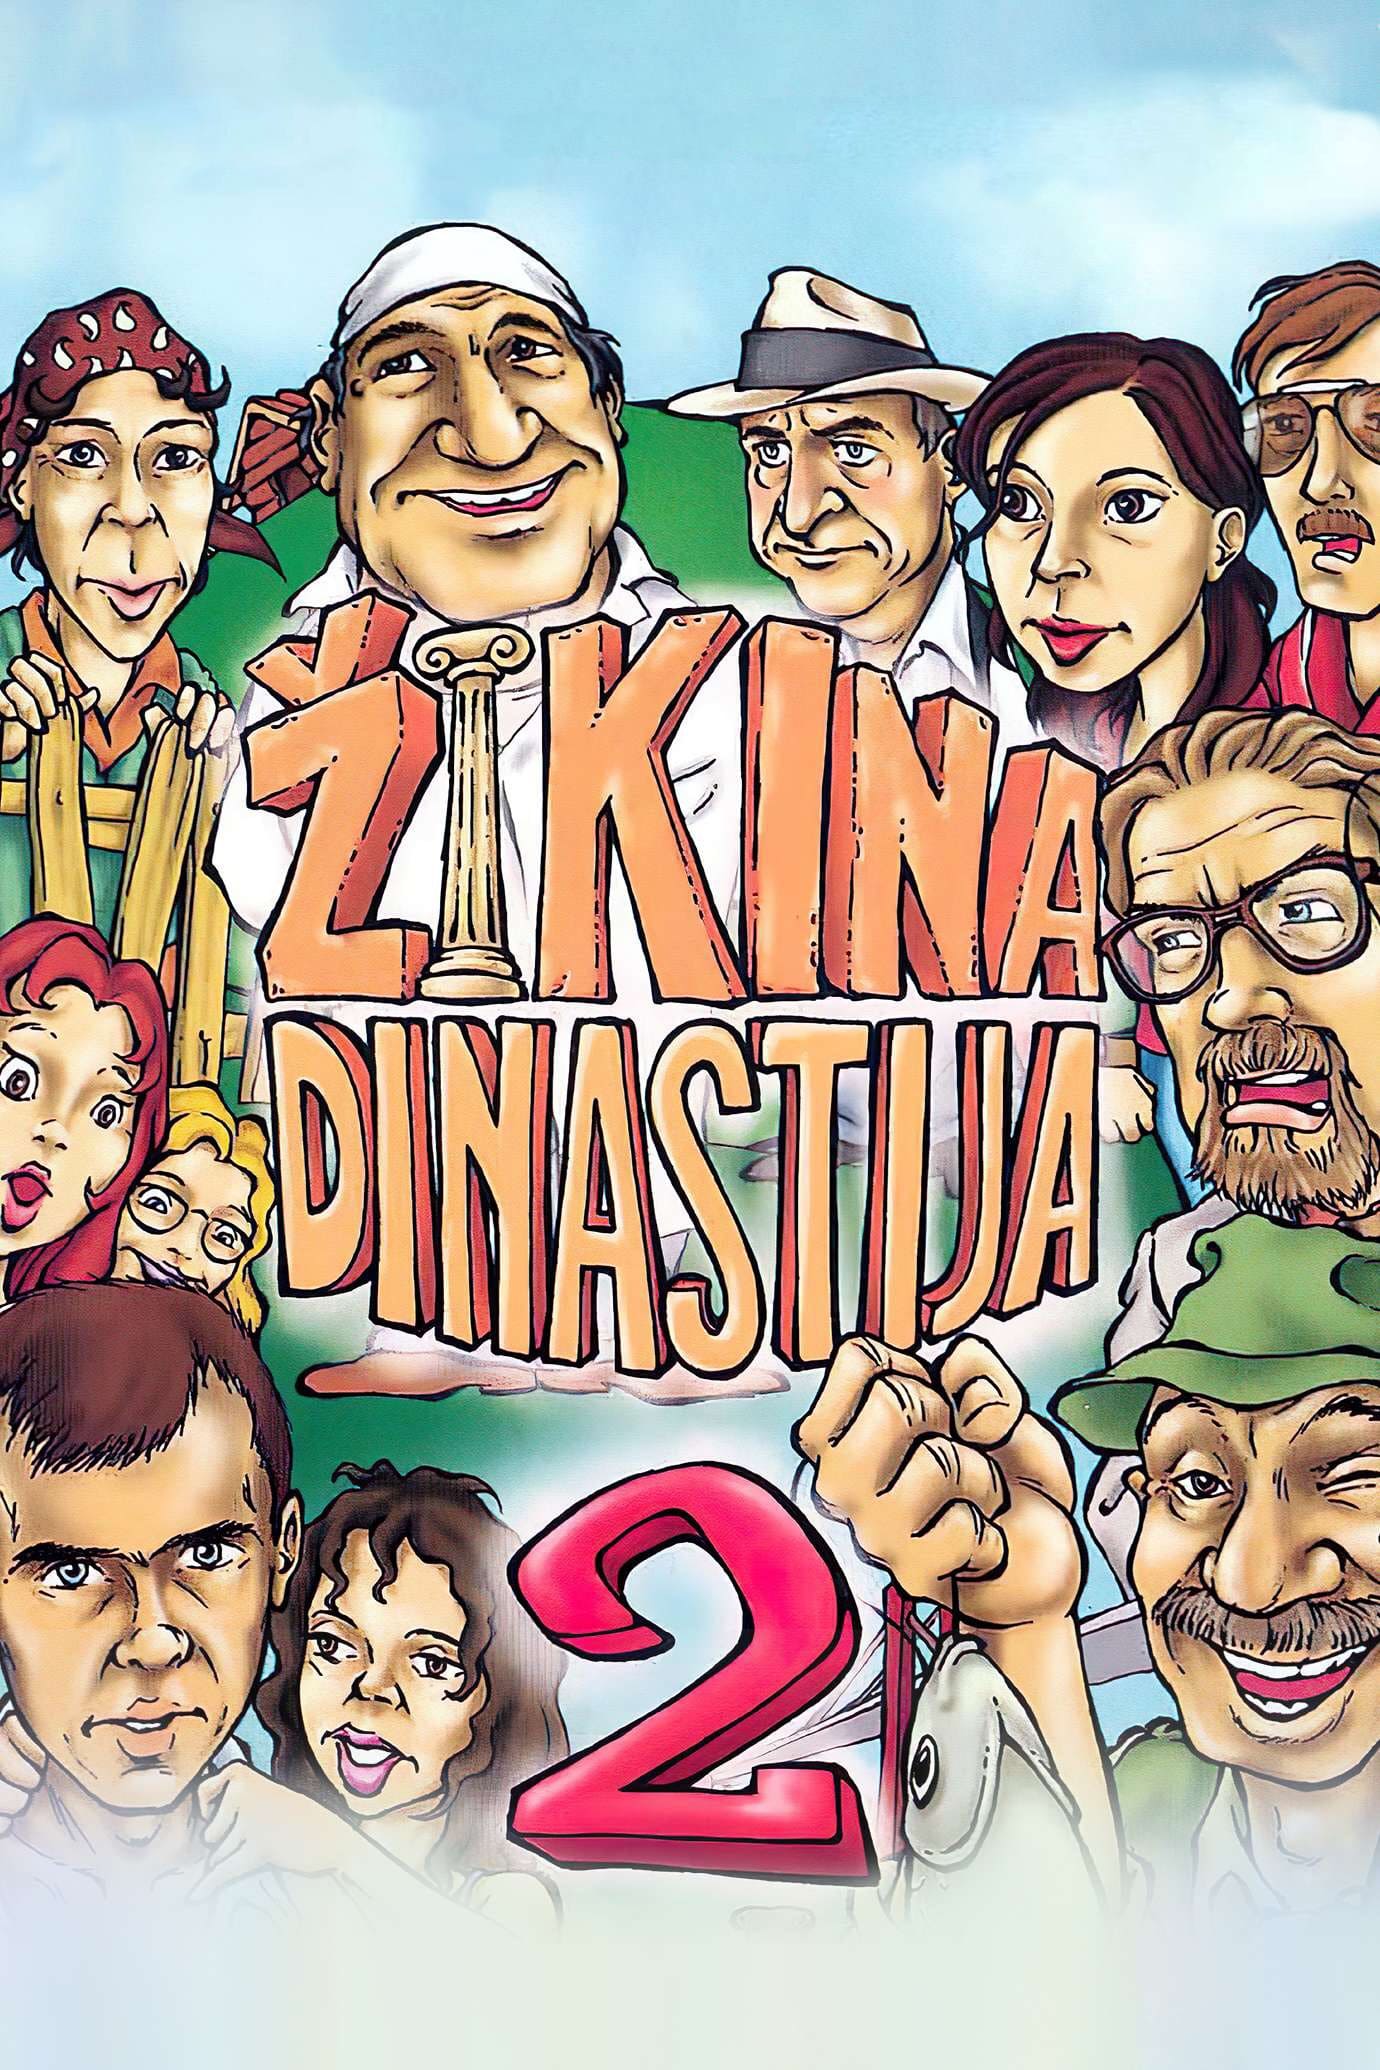 Second Žika's Dynasty (1986)